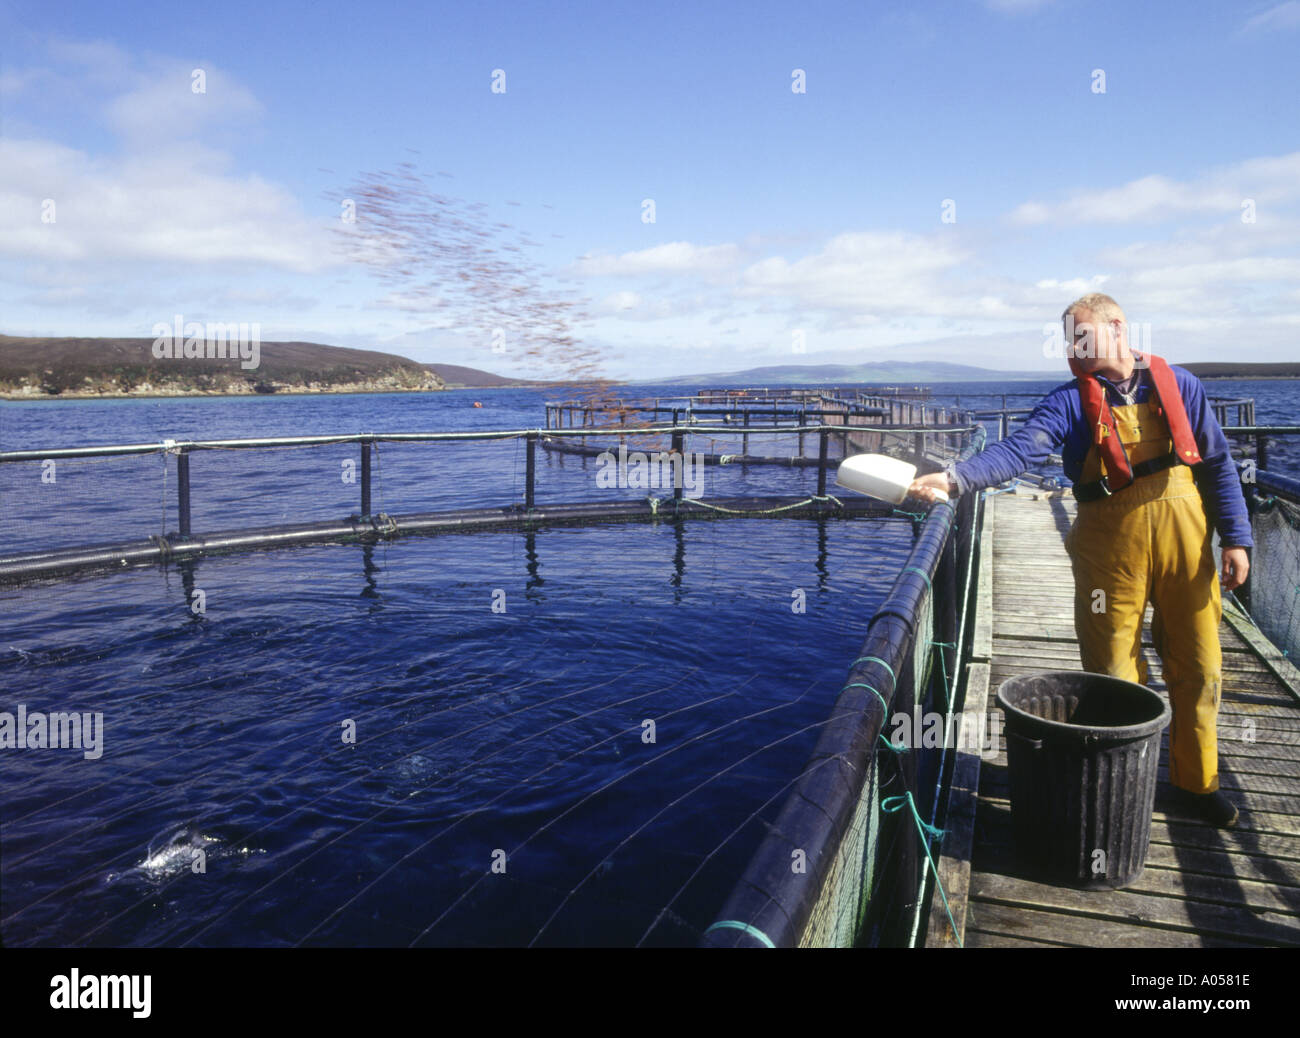 dh Rysa Salmon farm ORKNEY SALMON UK Scotland Salmon fish cages Scapa Flow feeding fish organic uk farming person Stock Photo